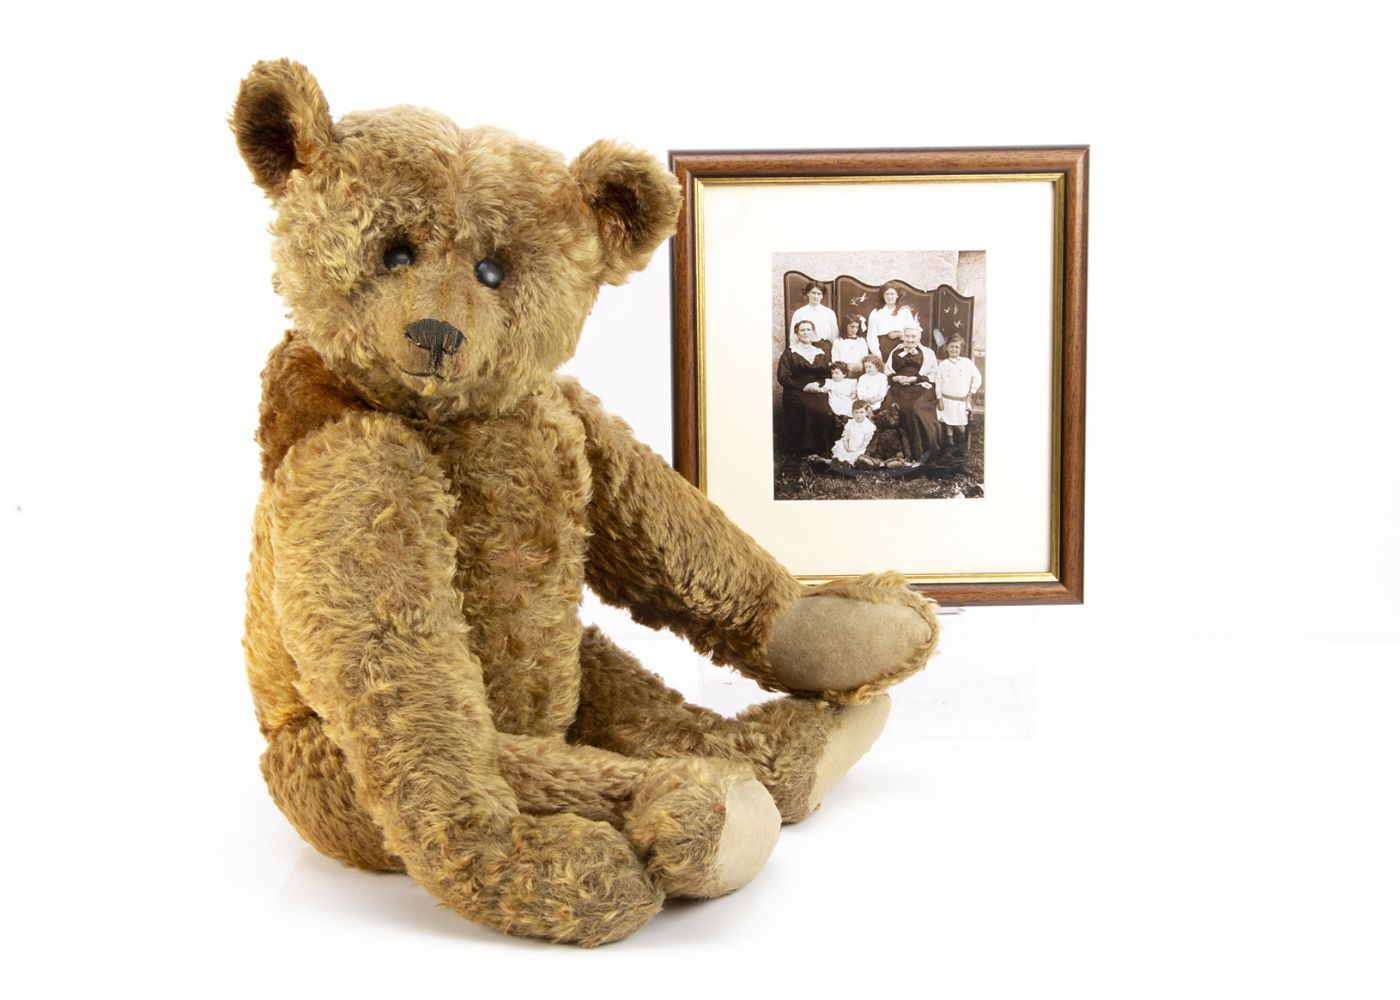 Dolls & Teddy Bears Auction